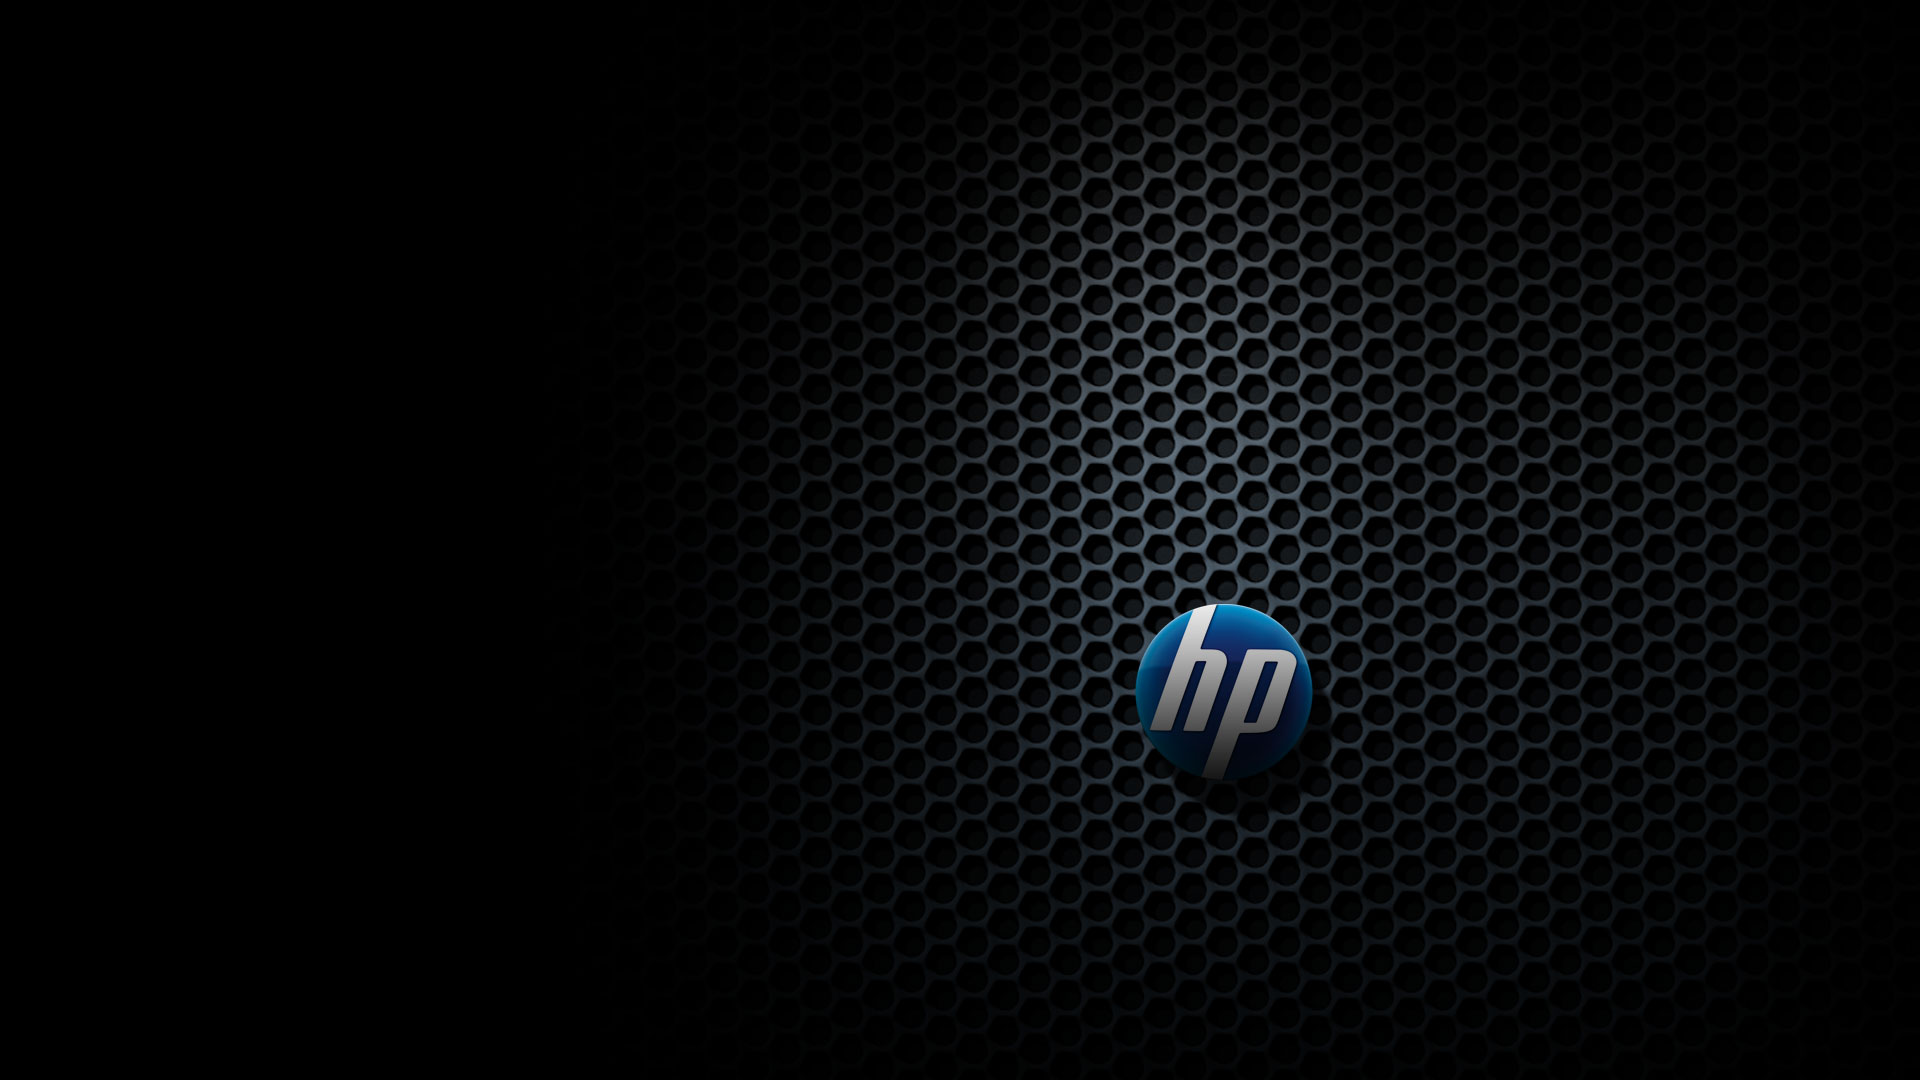 Technology Hewlett Packard 1920x1080